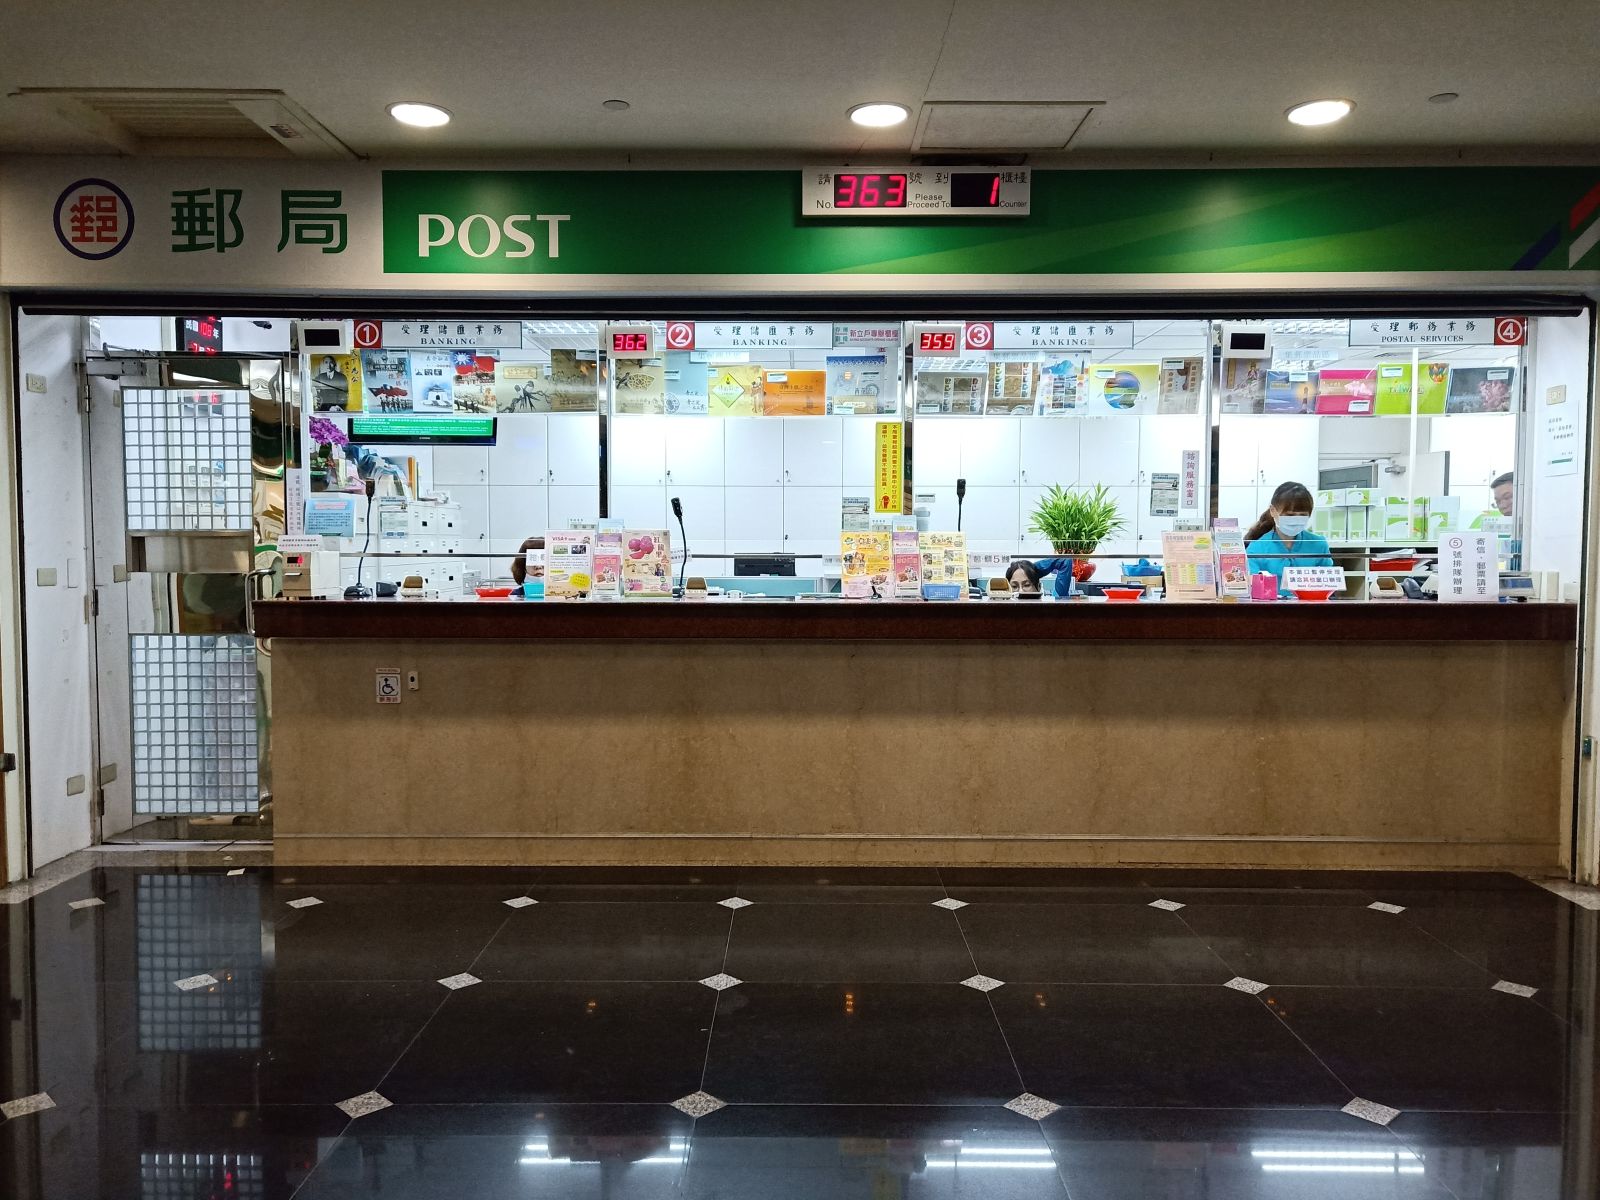 郵局/提款機：位於通往國立臺北健康大學之地下連通道